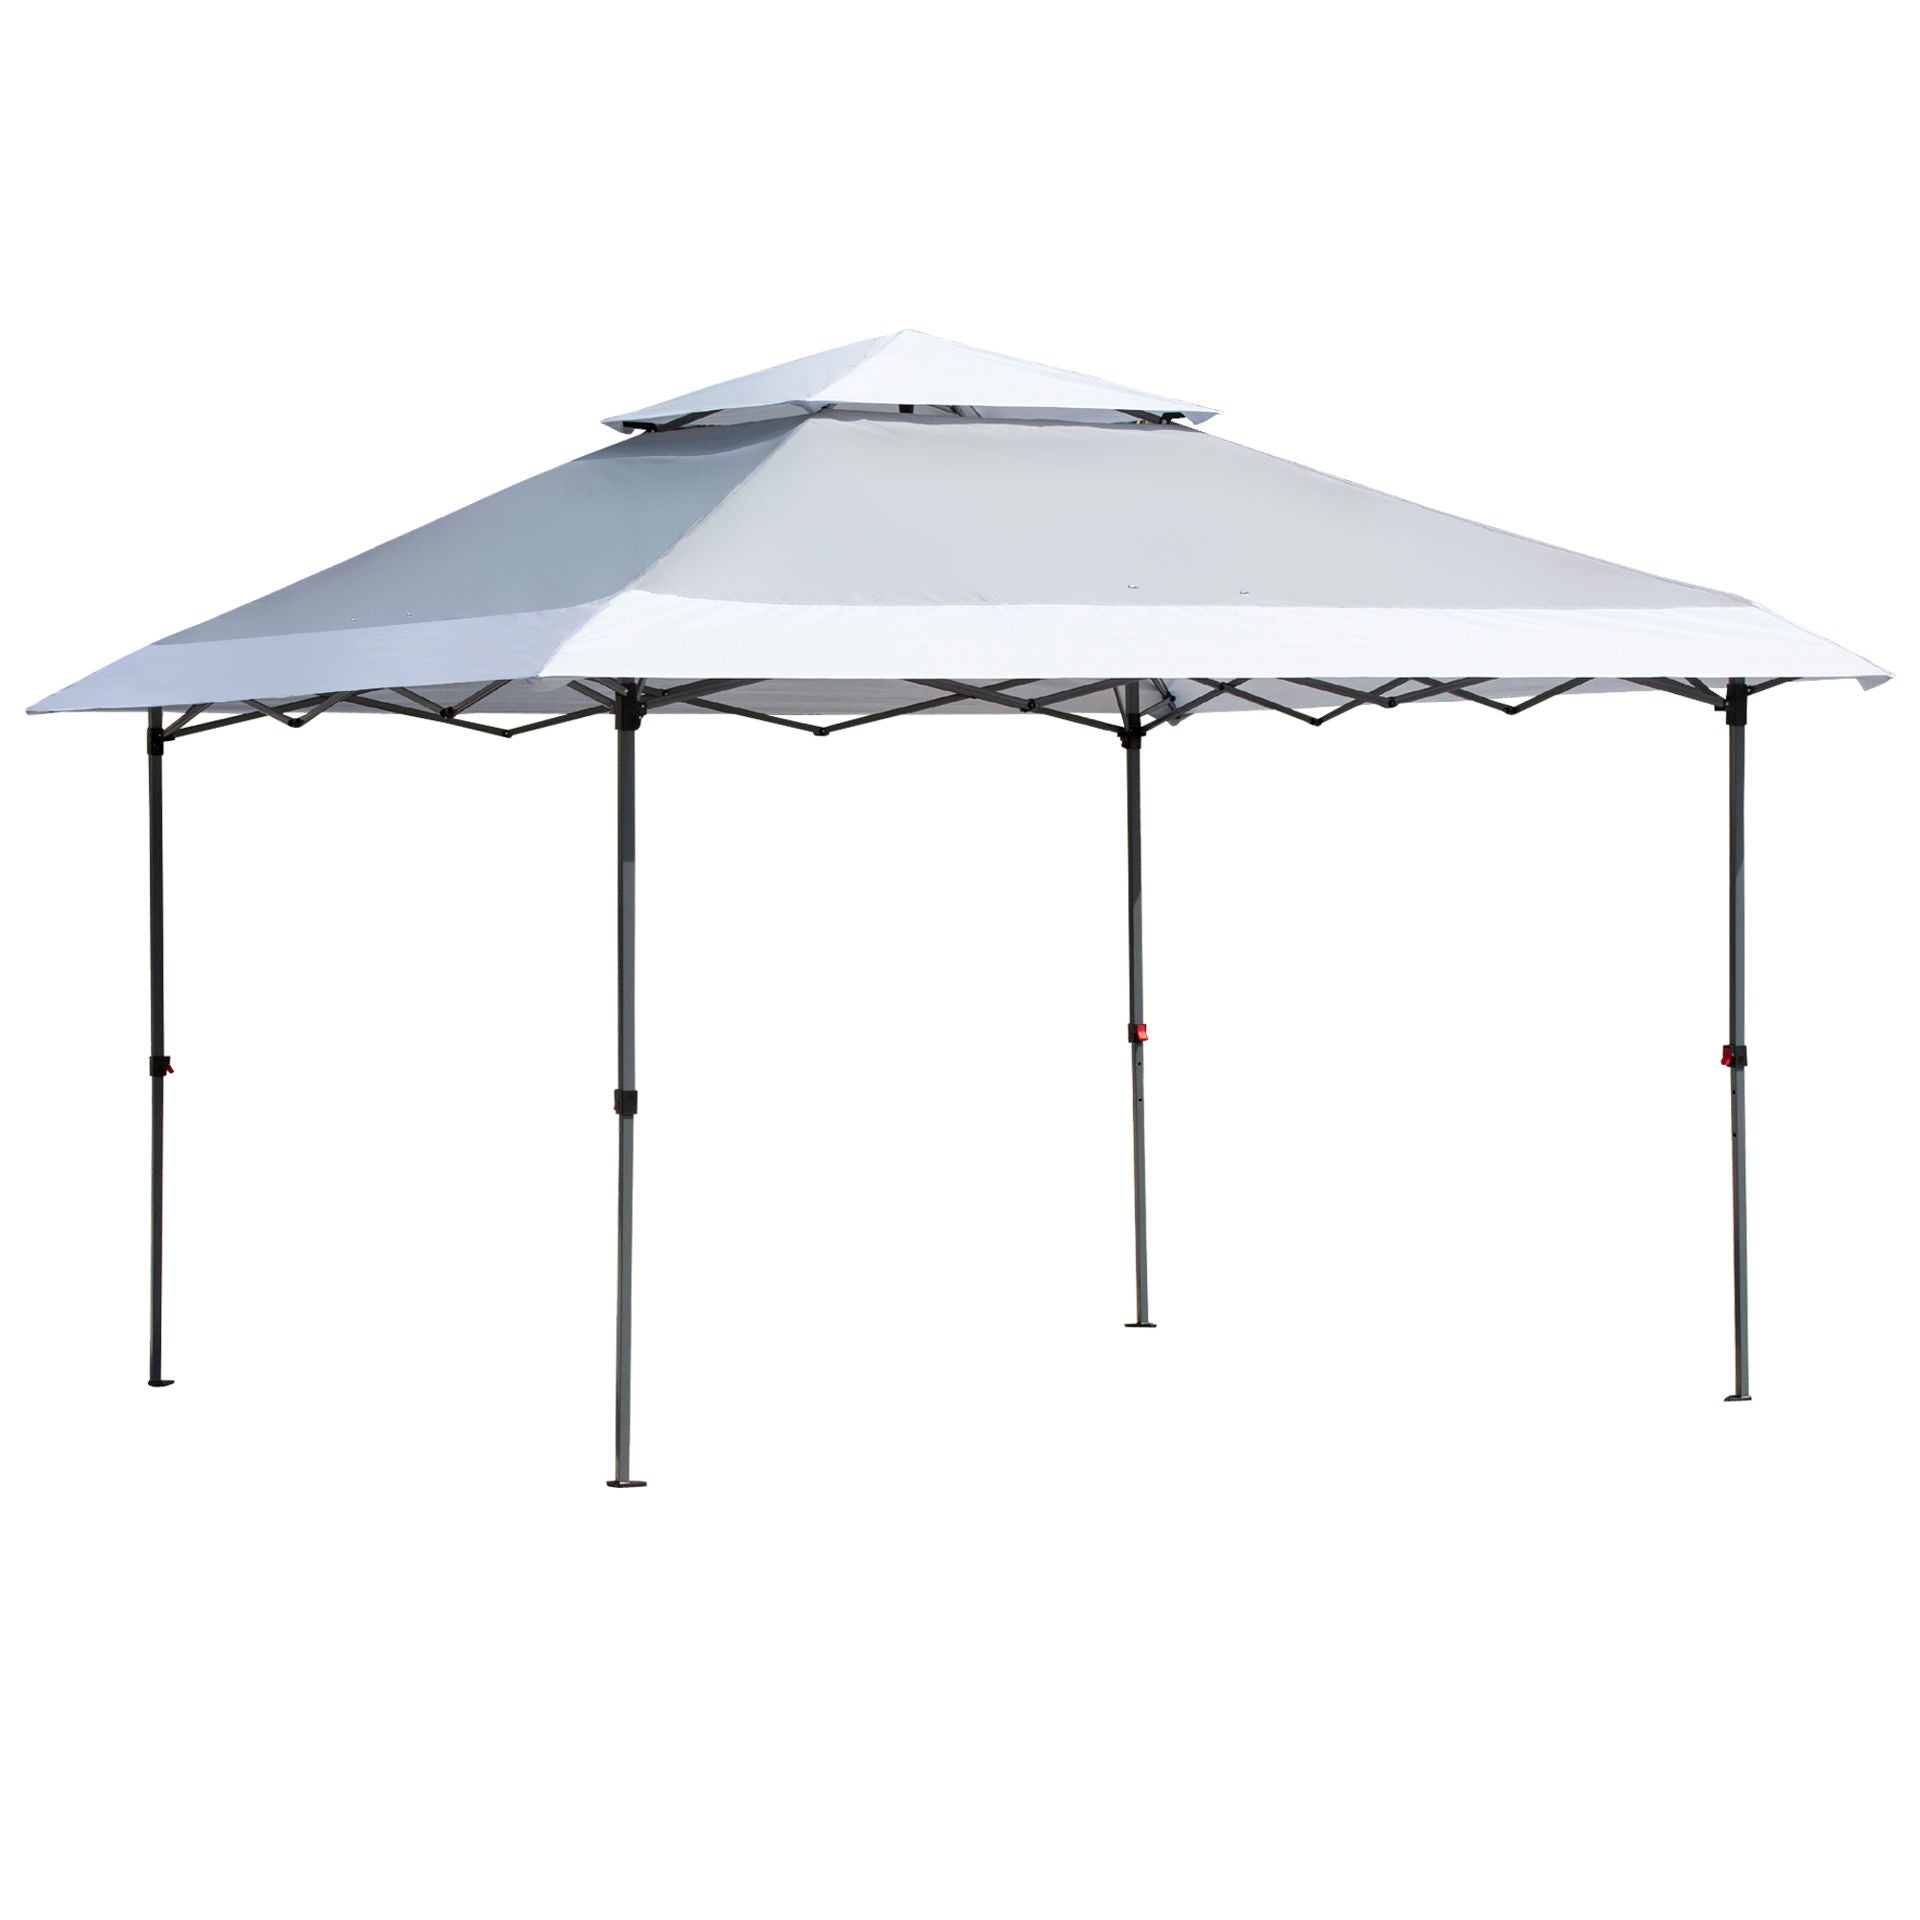 Nancy's Cove Point Folding Pavilion Pop-up Tent - Gray, White - Steel, Oxford Fabric - 1.37 cm x 1.37 cm x 1.05 cm